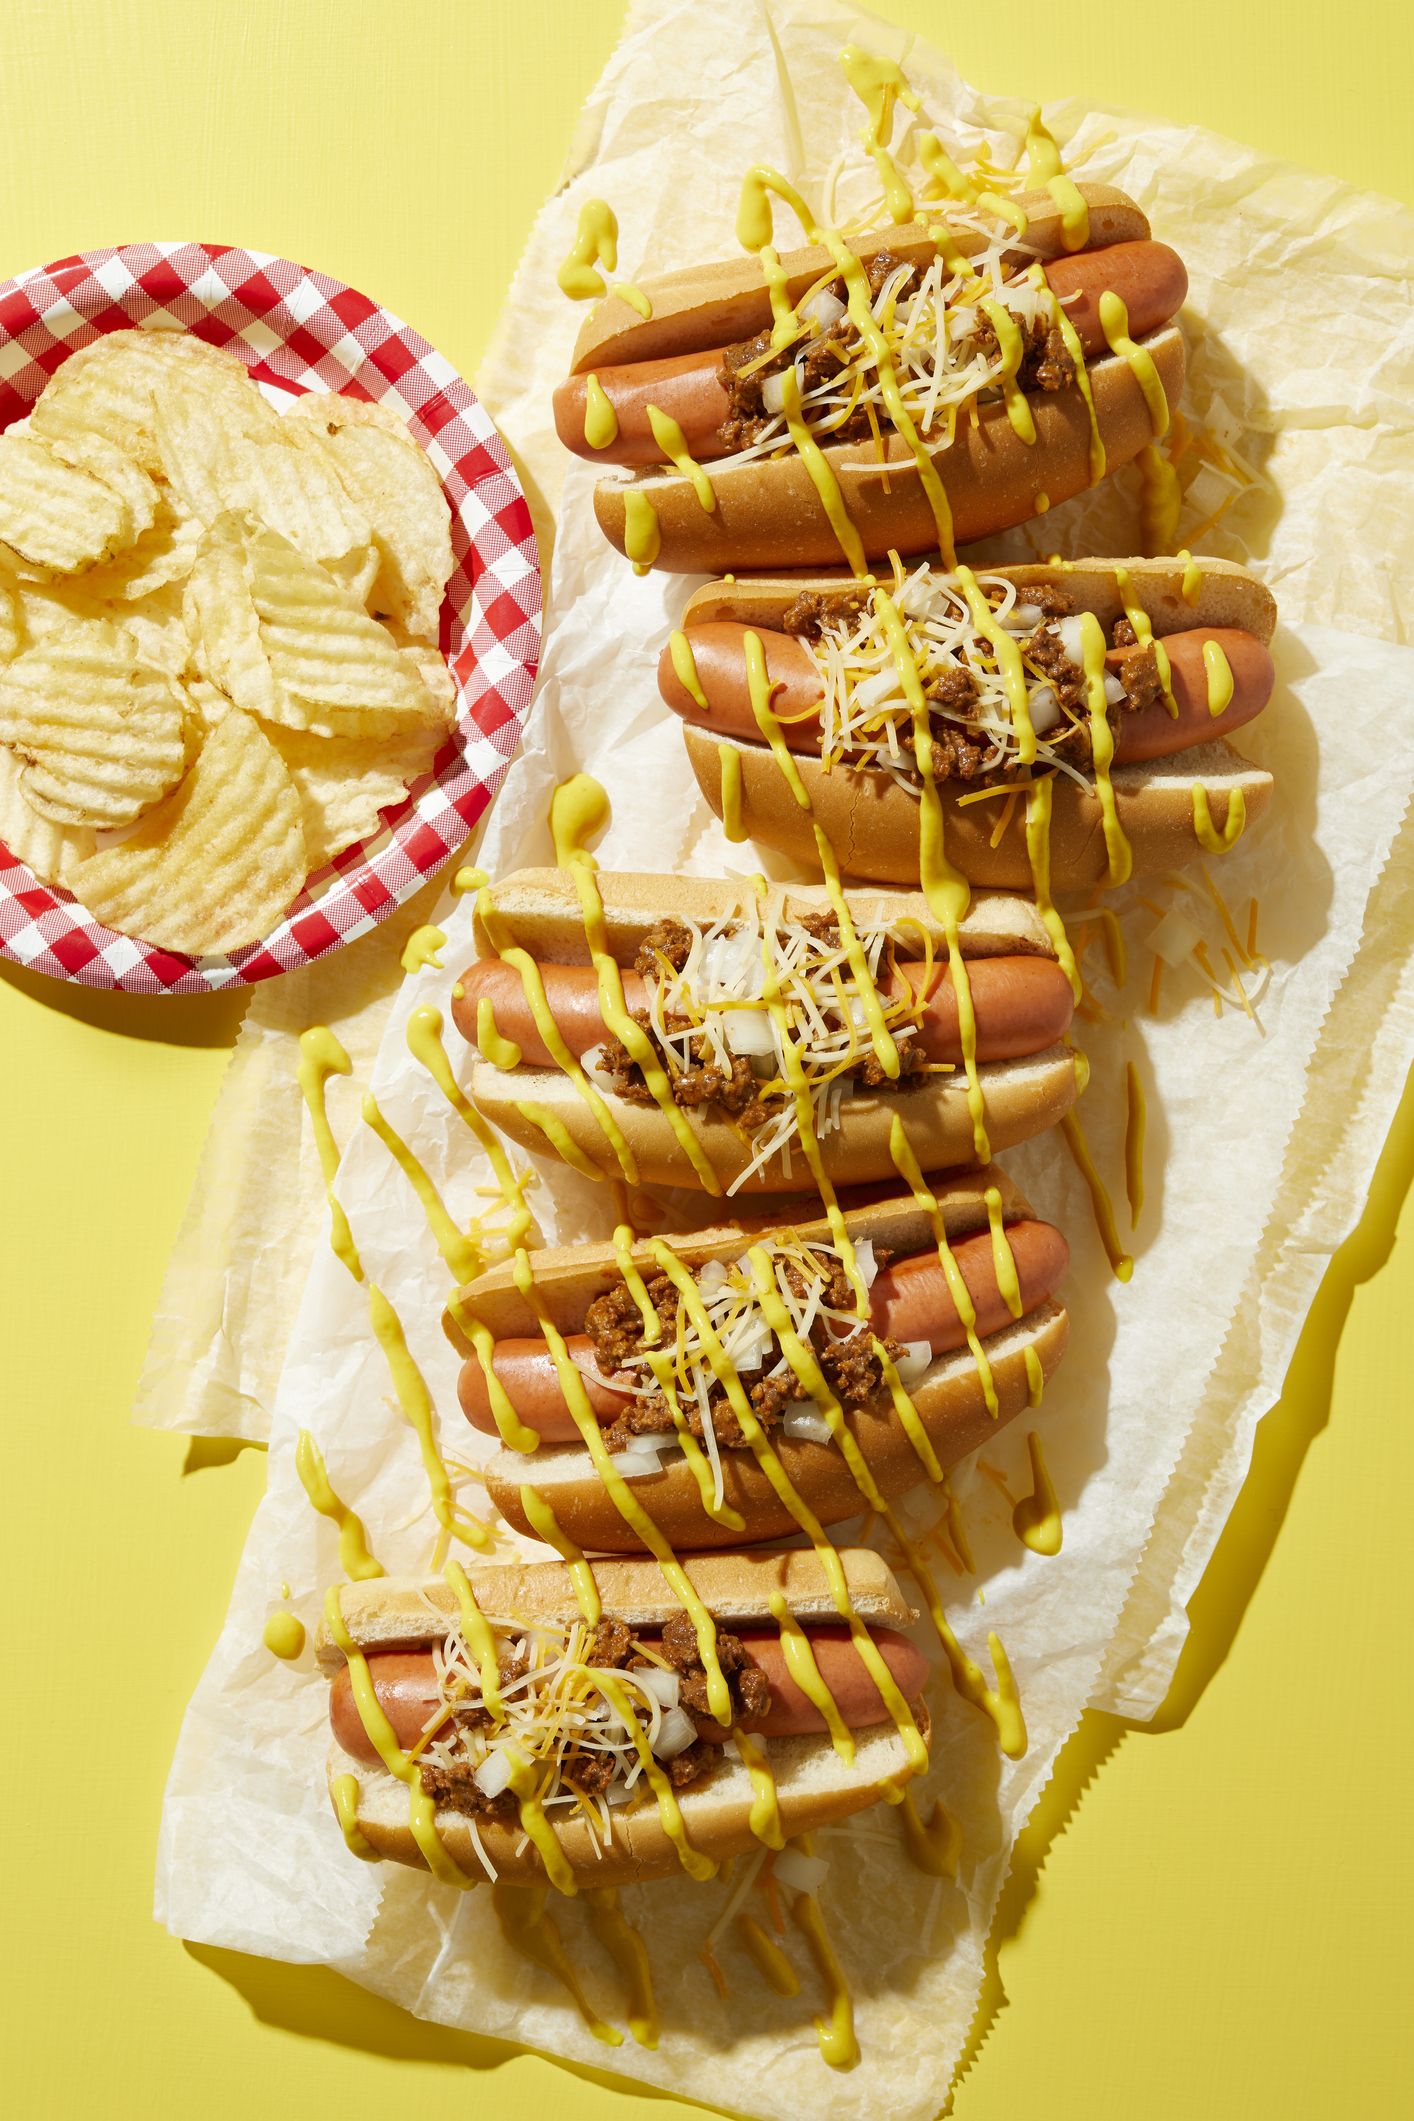 konusinių karštųjų šunų eilė su laistytomis garstyčiomis ir bulvių traškučių lėkštė geltoname fone, vaizdas iš viršaus